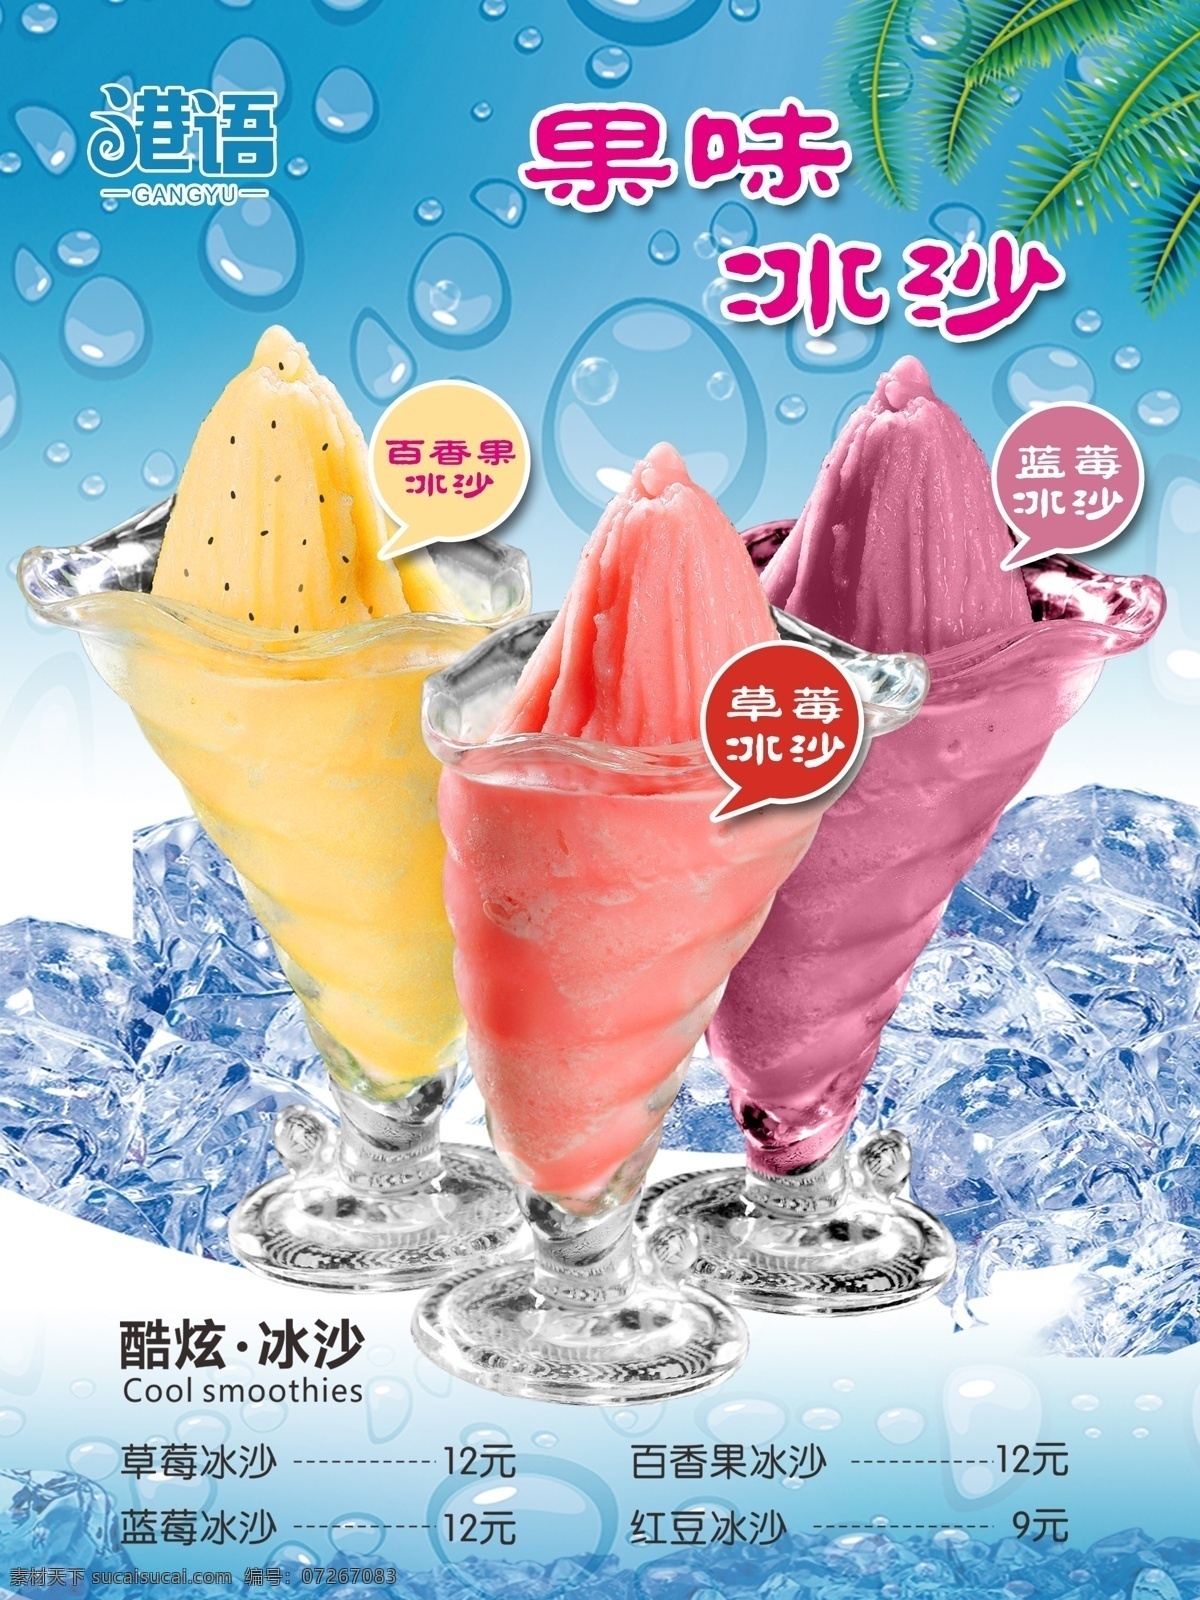 果味冰沙 沙冰 奶茶 饮品 冷饮 冰块 冷 夏天 水果冰沙 饮品店广告 冰 夏日冰饮